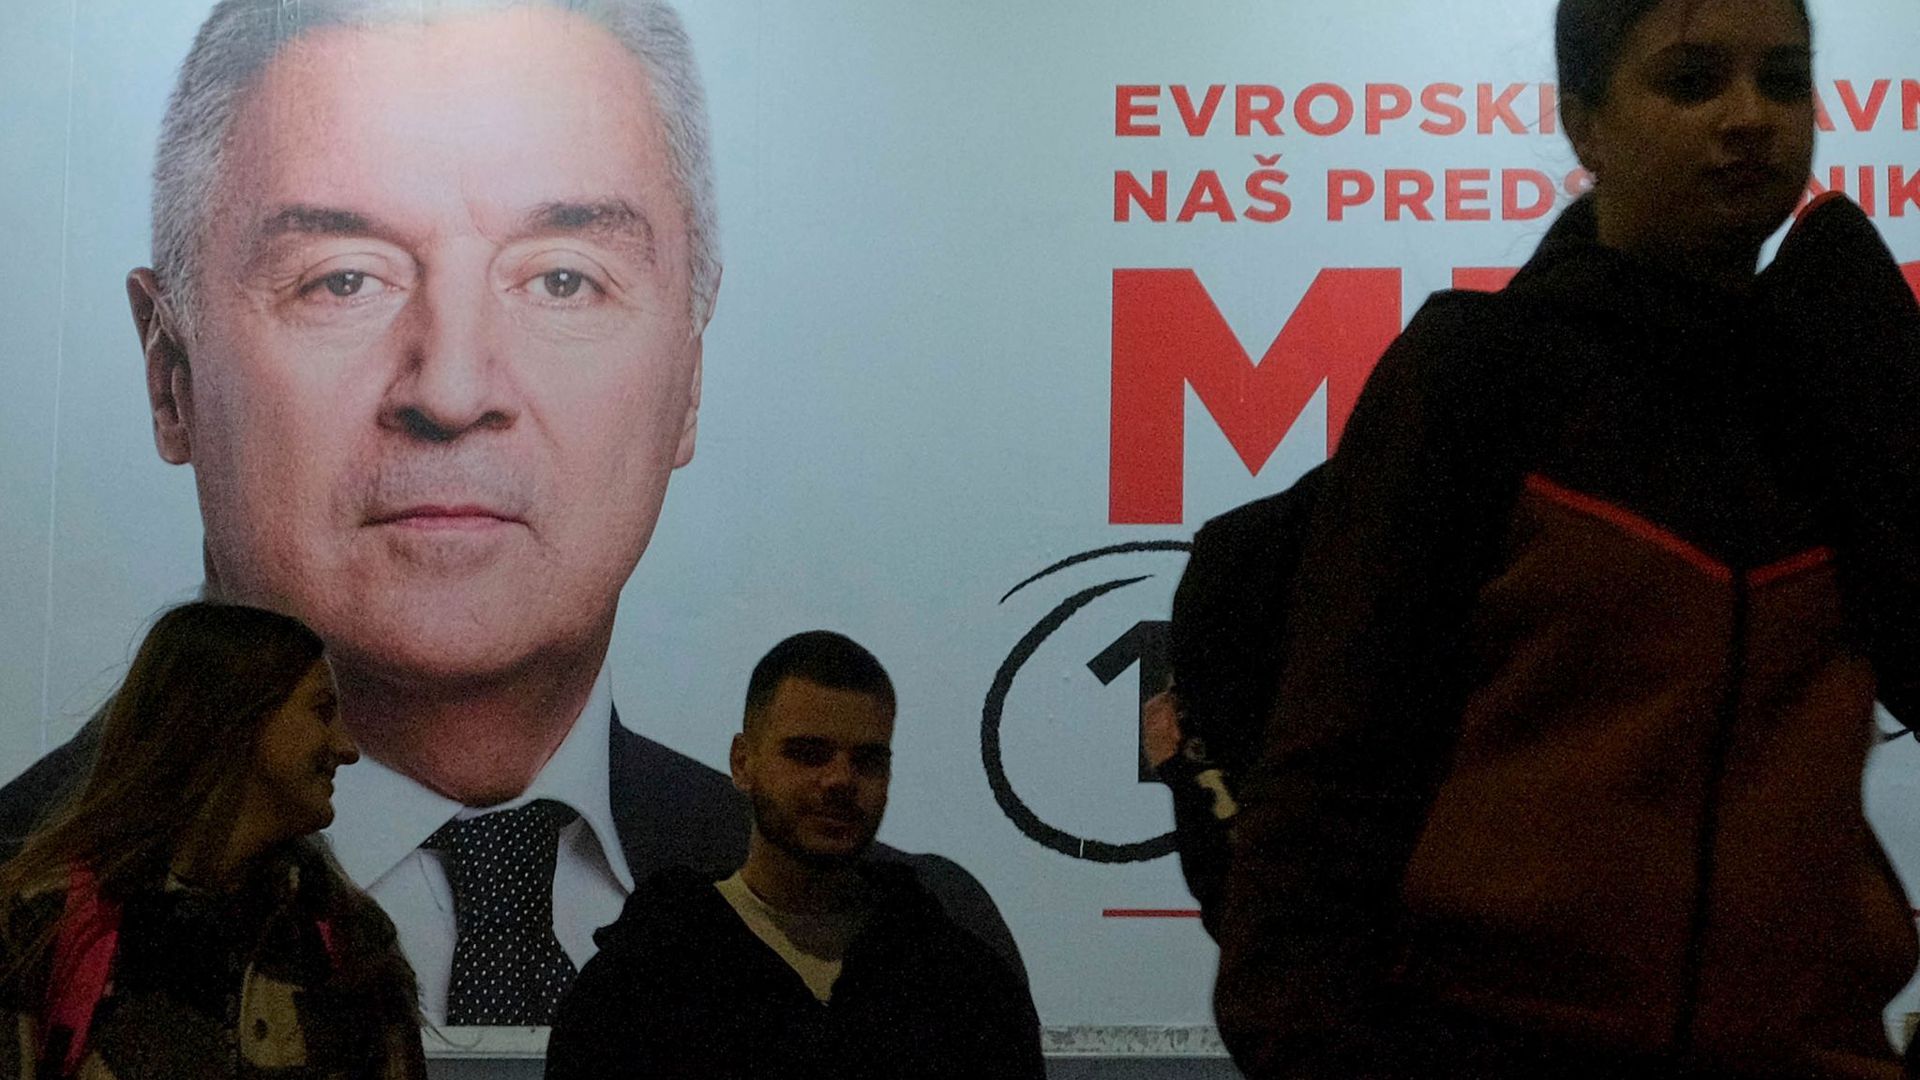 Der Wahlkampf ist zu Ende: Menschen gehen an einem Plakat des pro-westlichen Amtsinhabers Milo Djukanovic vorbei.